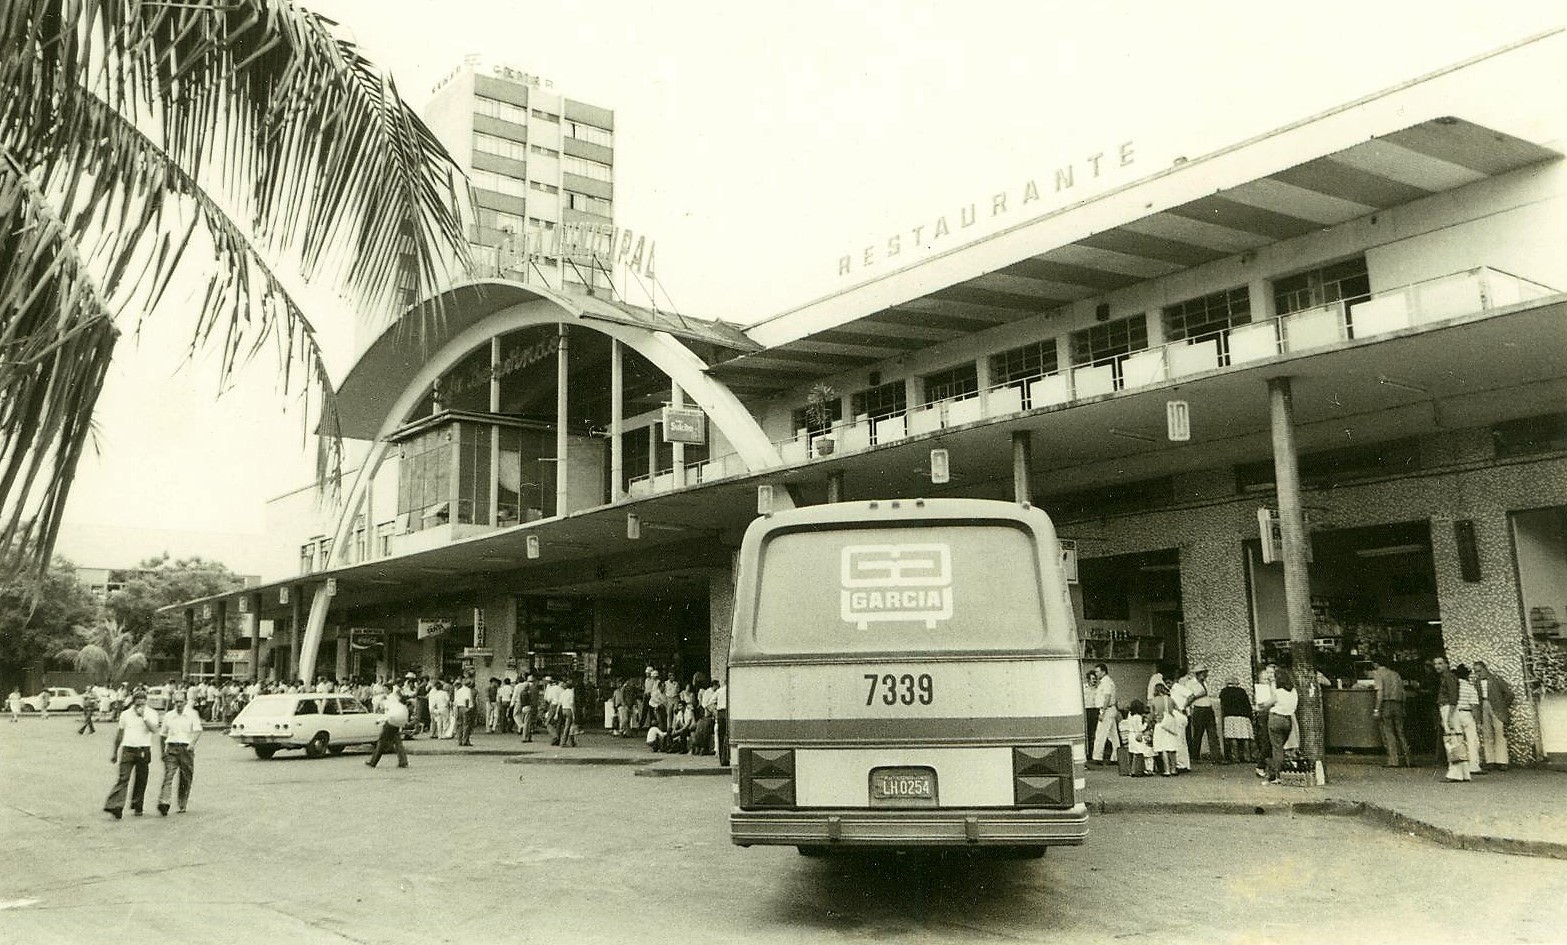 Estação Rodoviária Municipal - Década de 1970